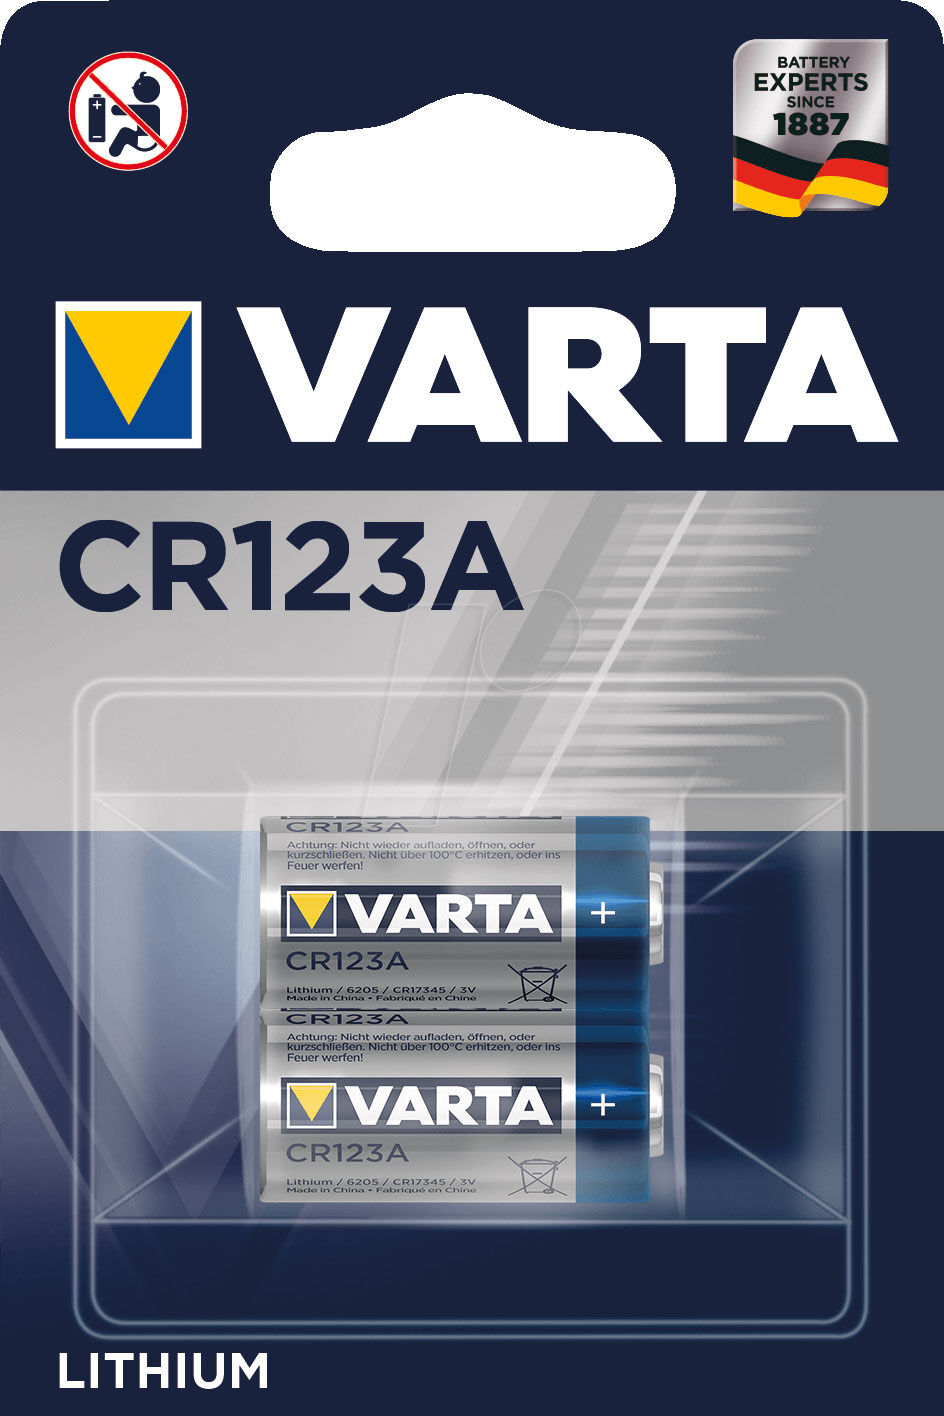 Varta Pile CR123A Lithium X2